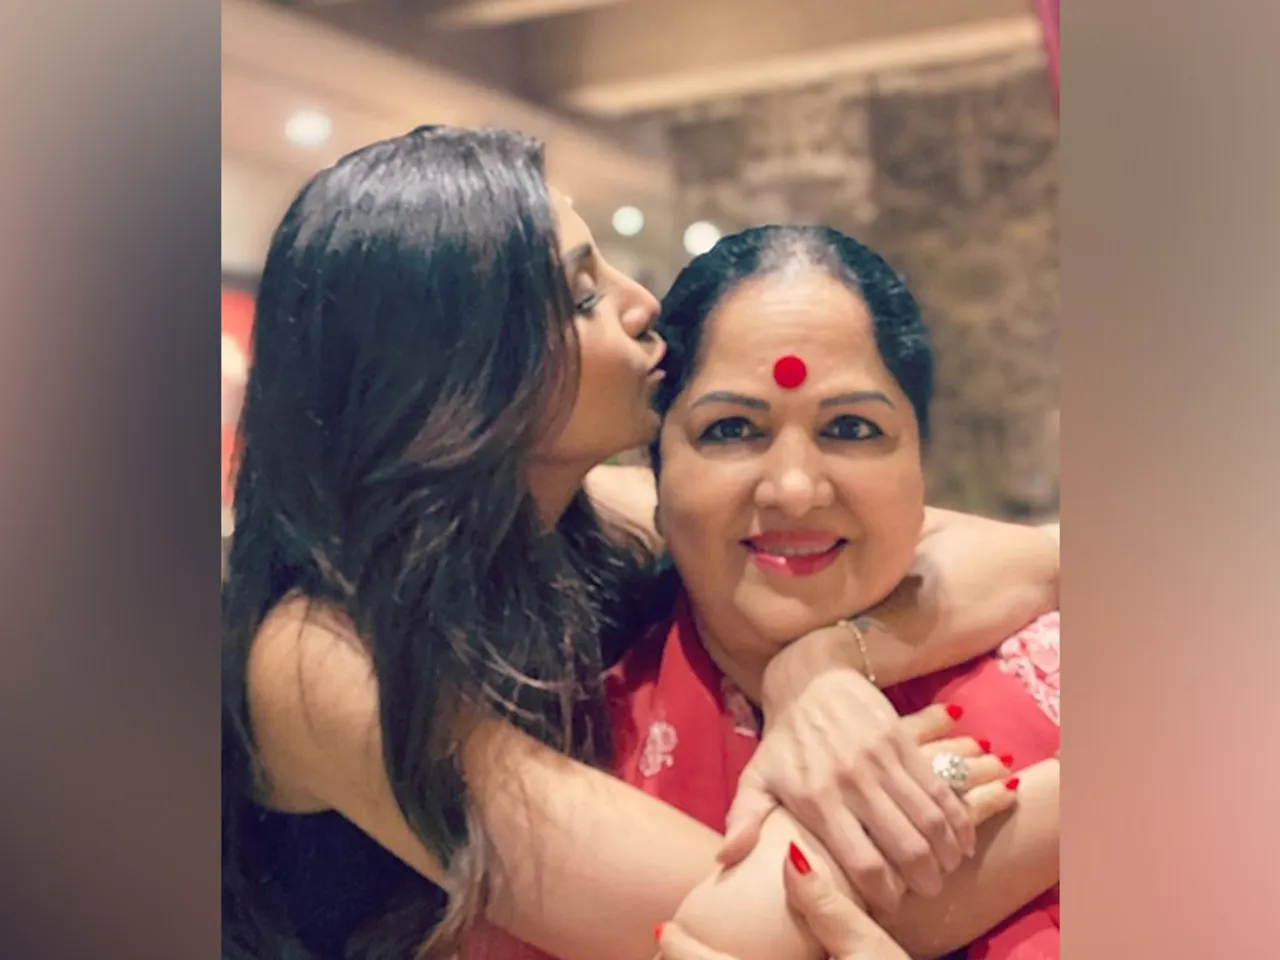 एक्ट्रेस शिल्पा शेट्टी ने अपनी मां के जन्मदिन पर पोस्ट की तस्वीर, कहा - 'आज जो कुछ भी हूं आपकी वजह से हूं'